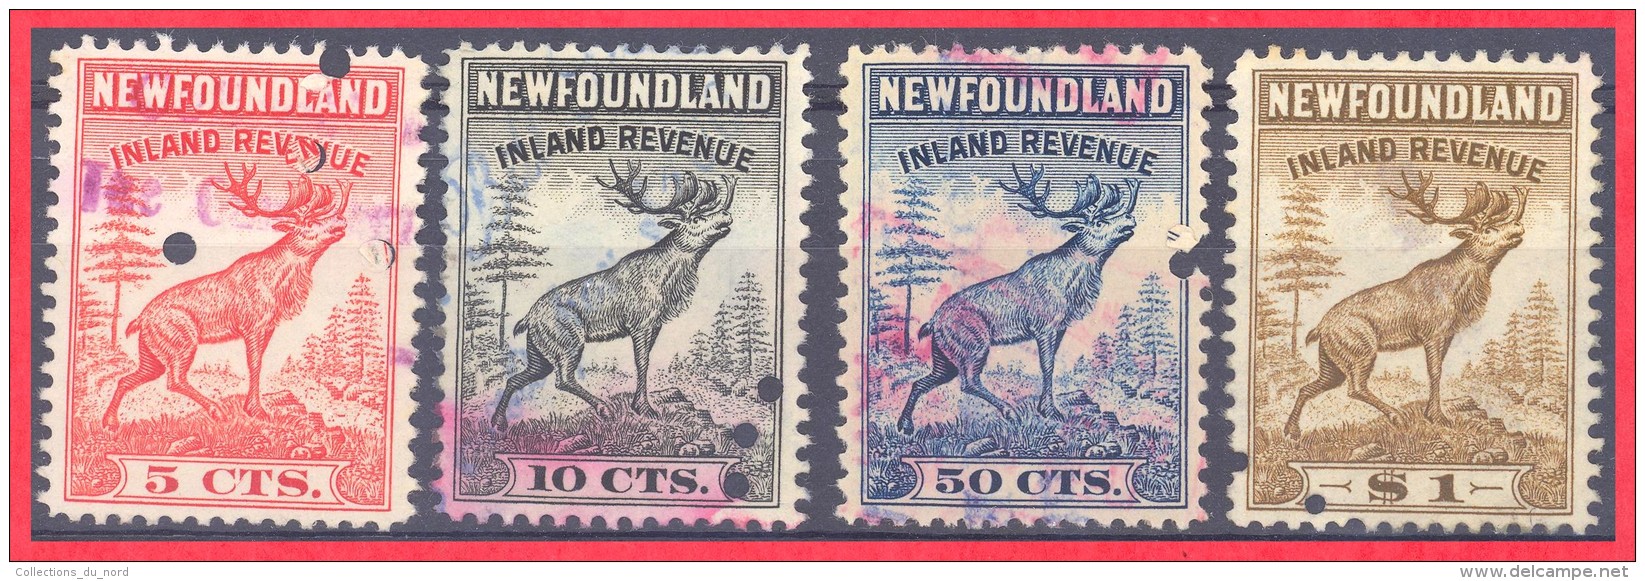 Canada Newfoundland # NFR 36, 37, 39, 40 O VF  - Inland Revenue - Back Of Book